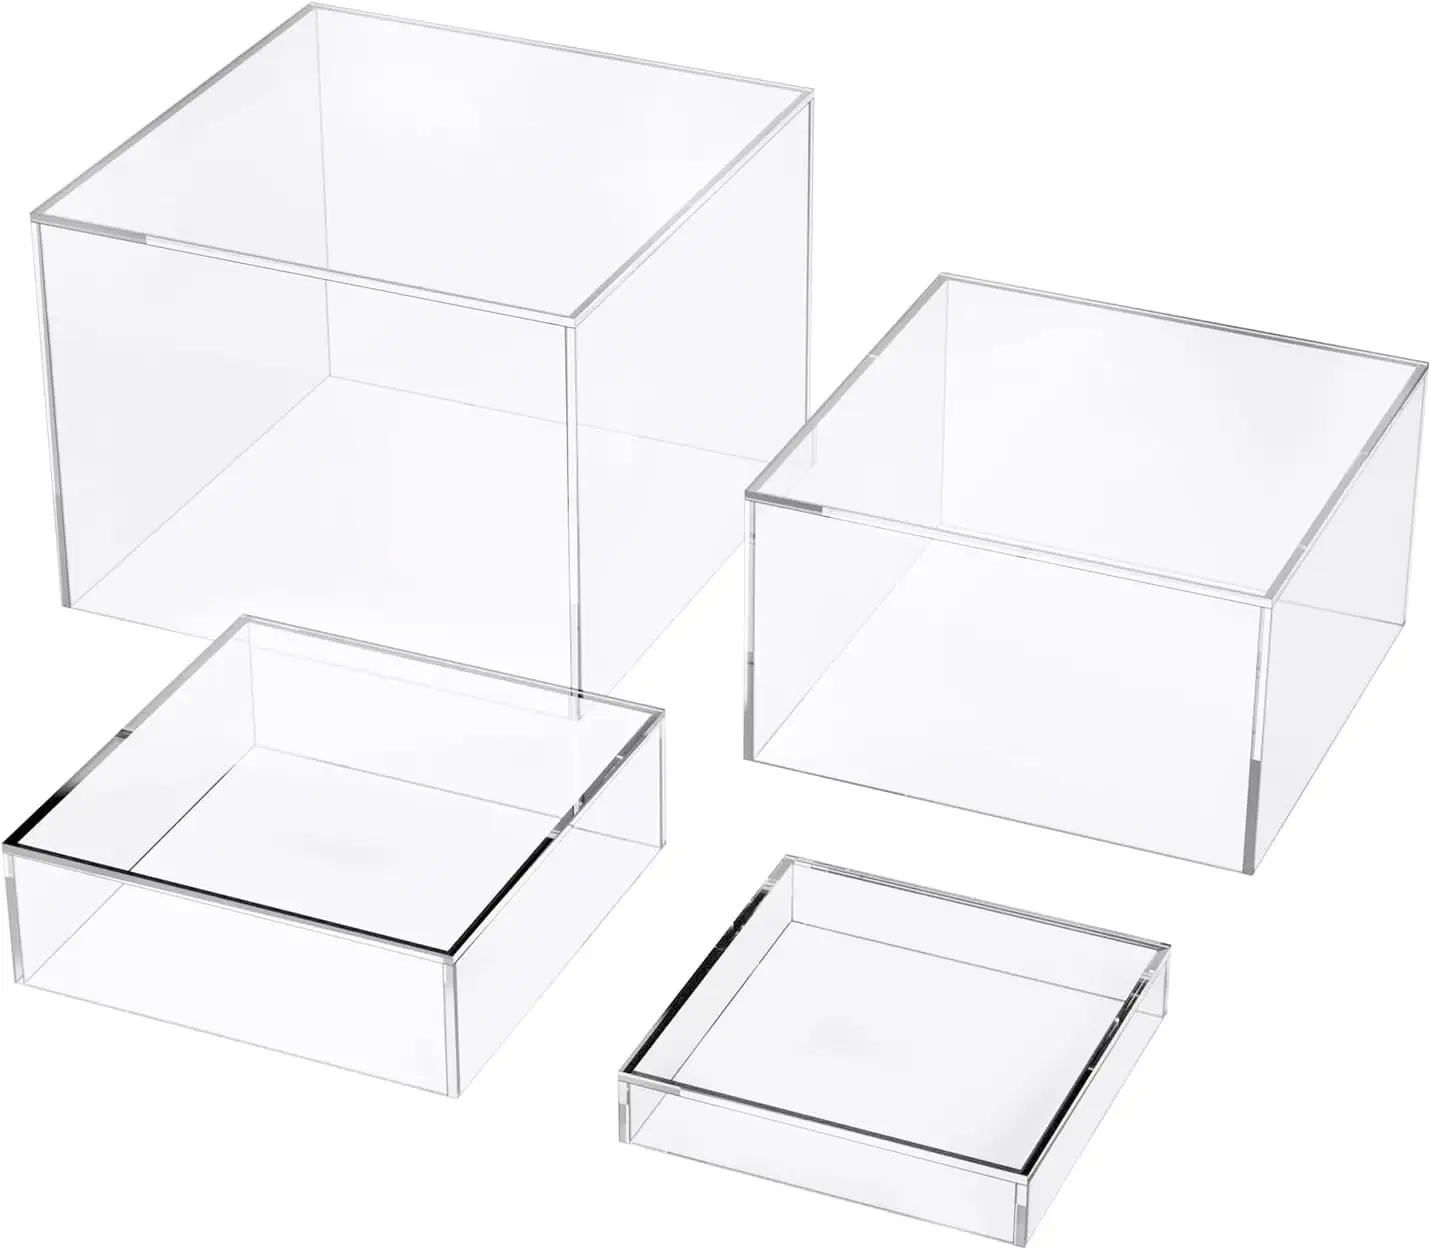 Ein set bestehend aus 4 transparenten kristall-acryl-boxwürfeln mit buffet verschachtelten rohren mit hohlem boden transparenz